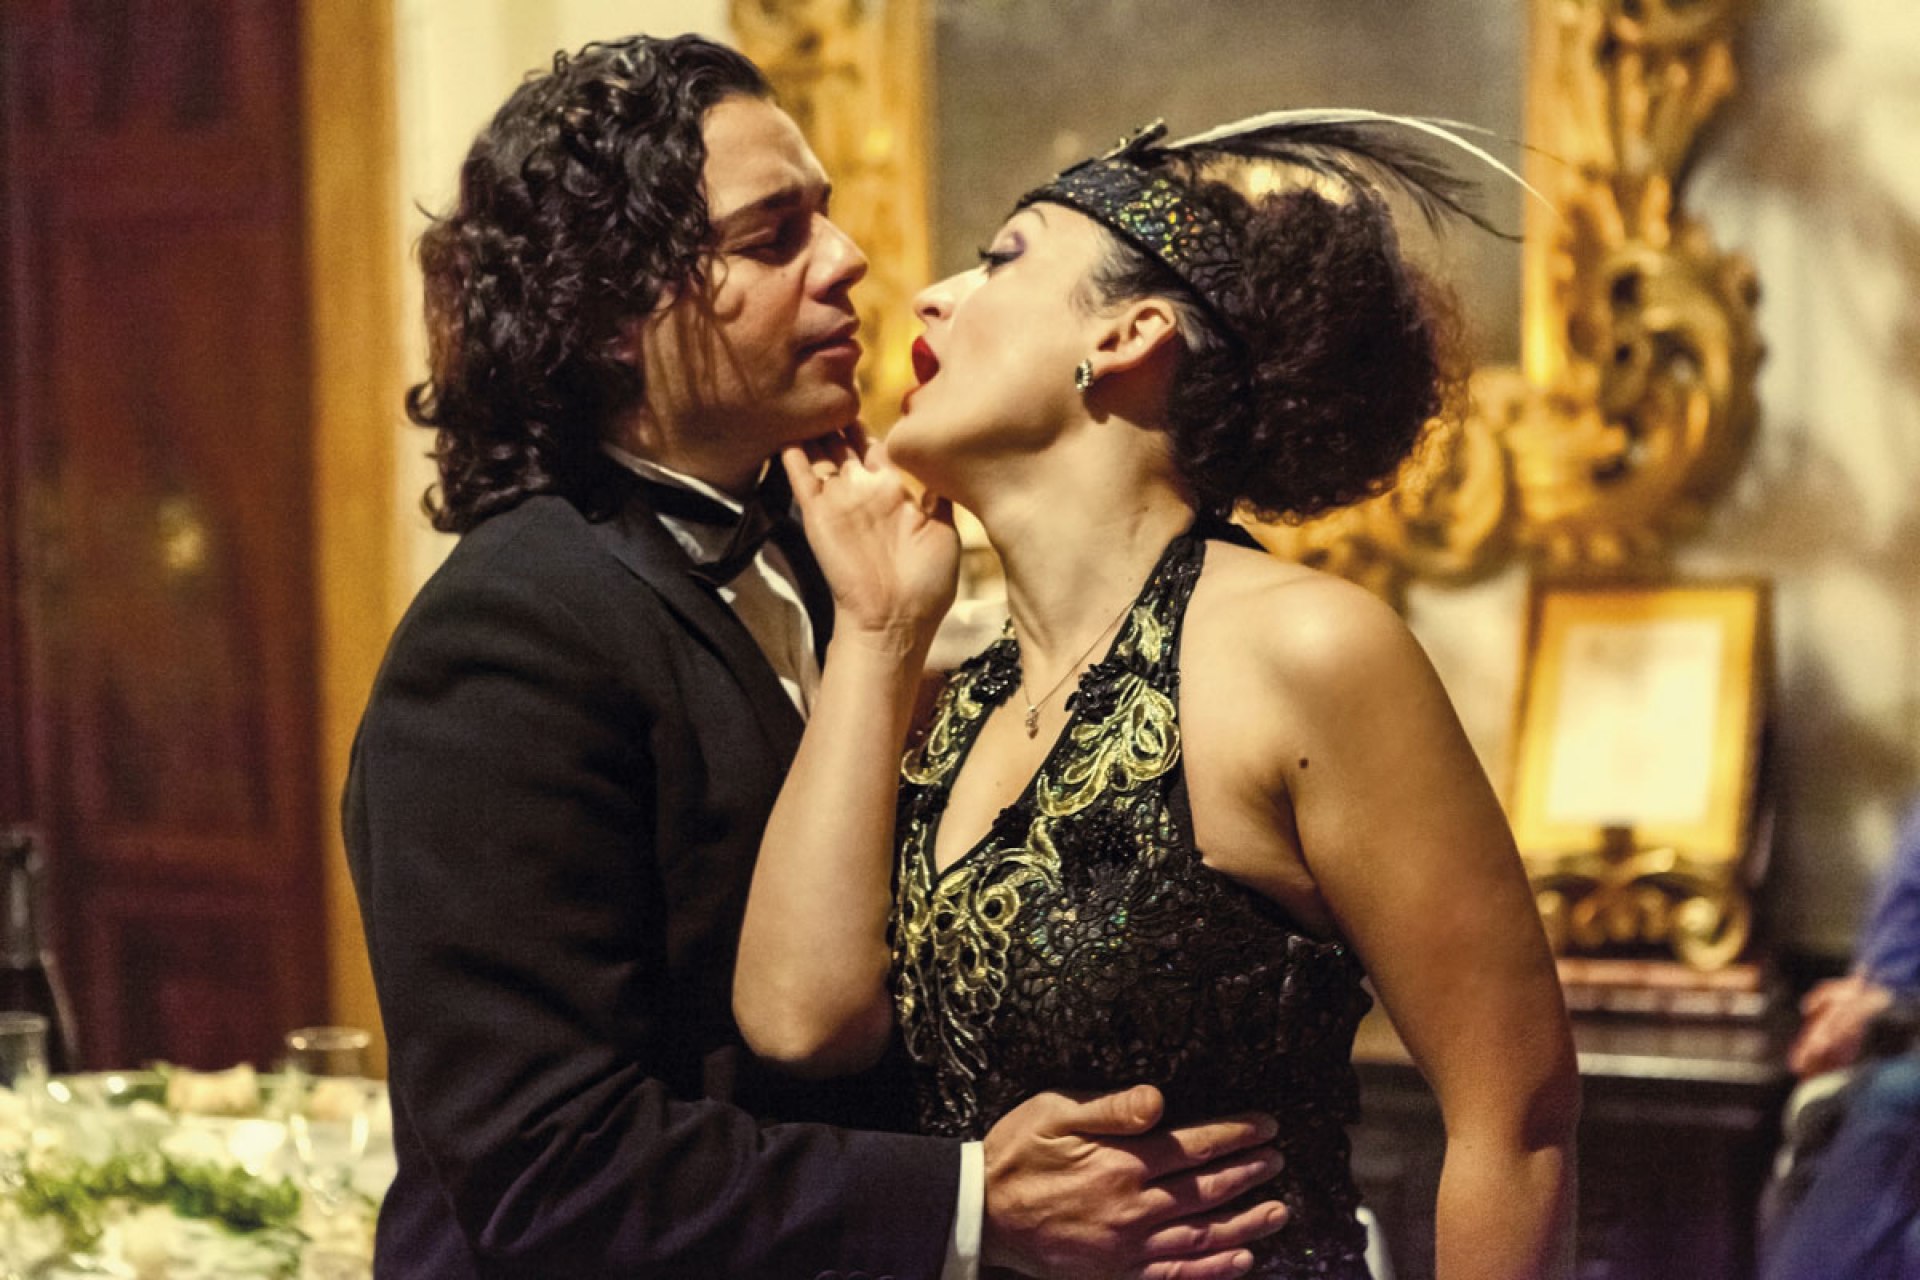 La Traviata | Musica a Palazzo | Opera biglietti